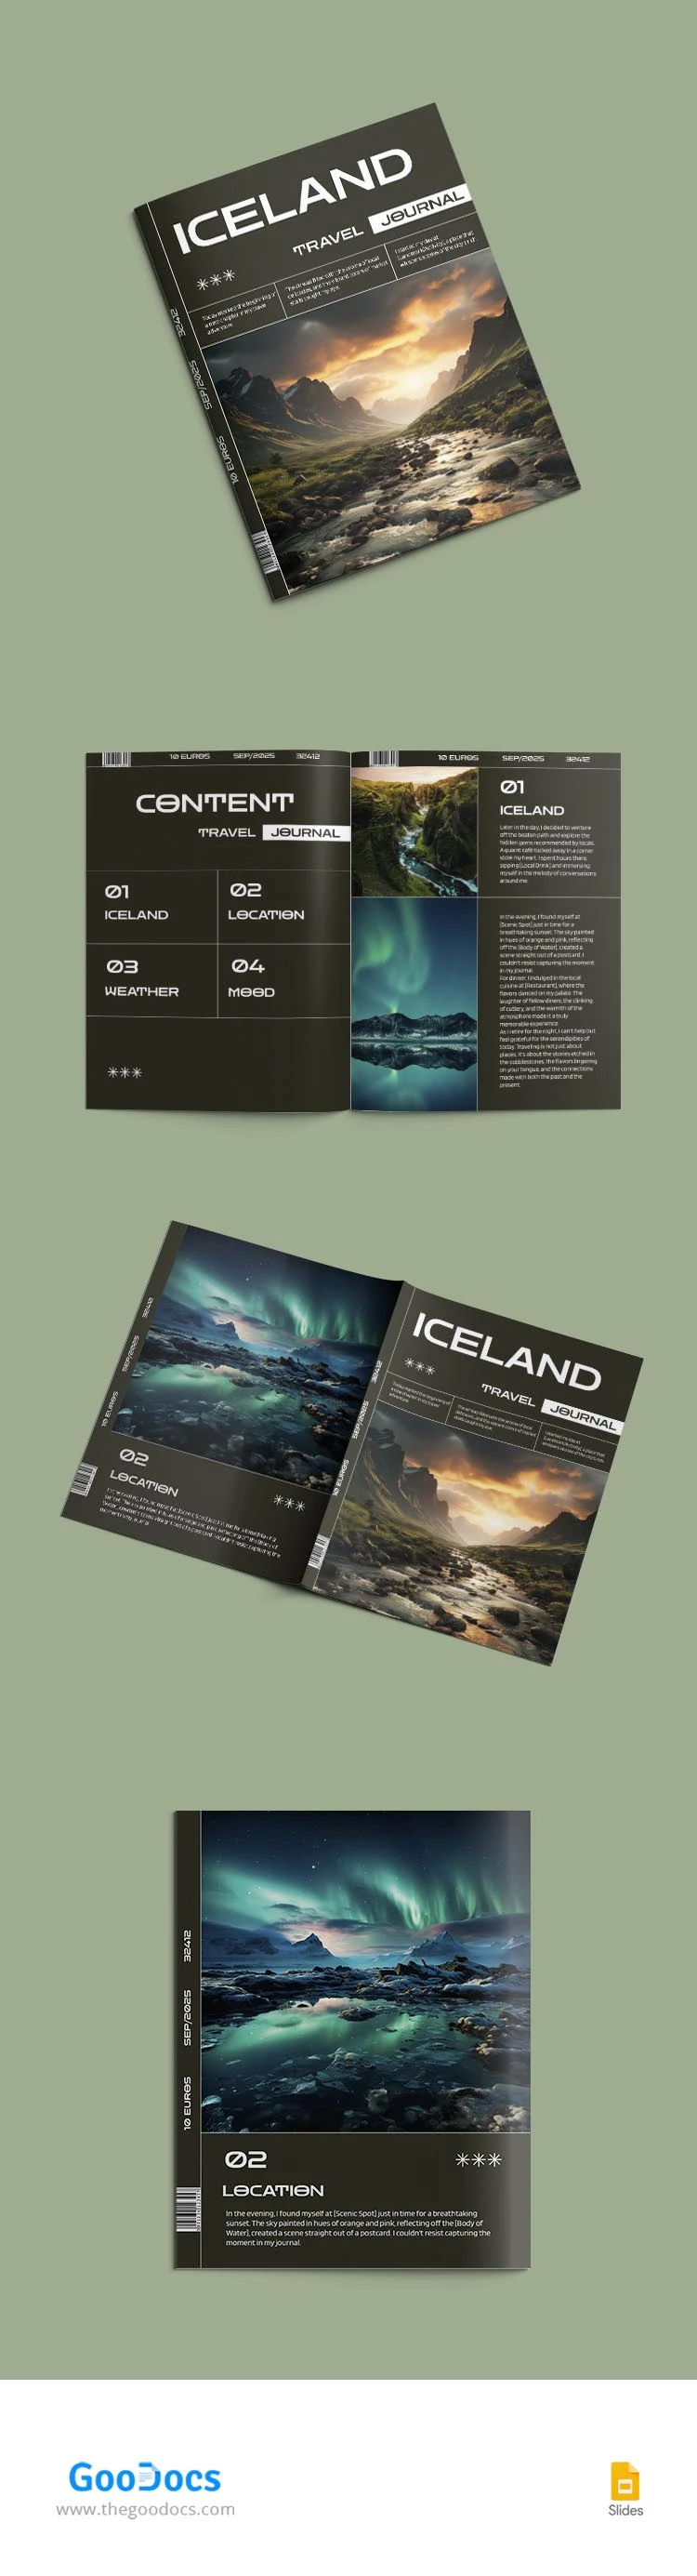 Journal d'Islande - free Google Docs Template - 10067513